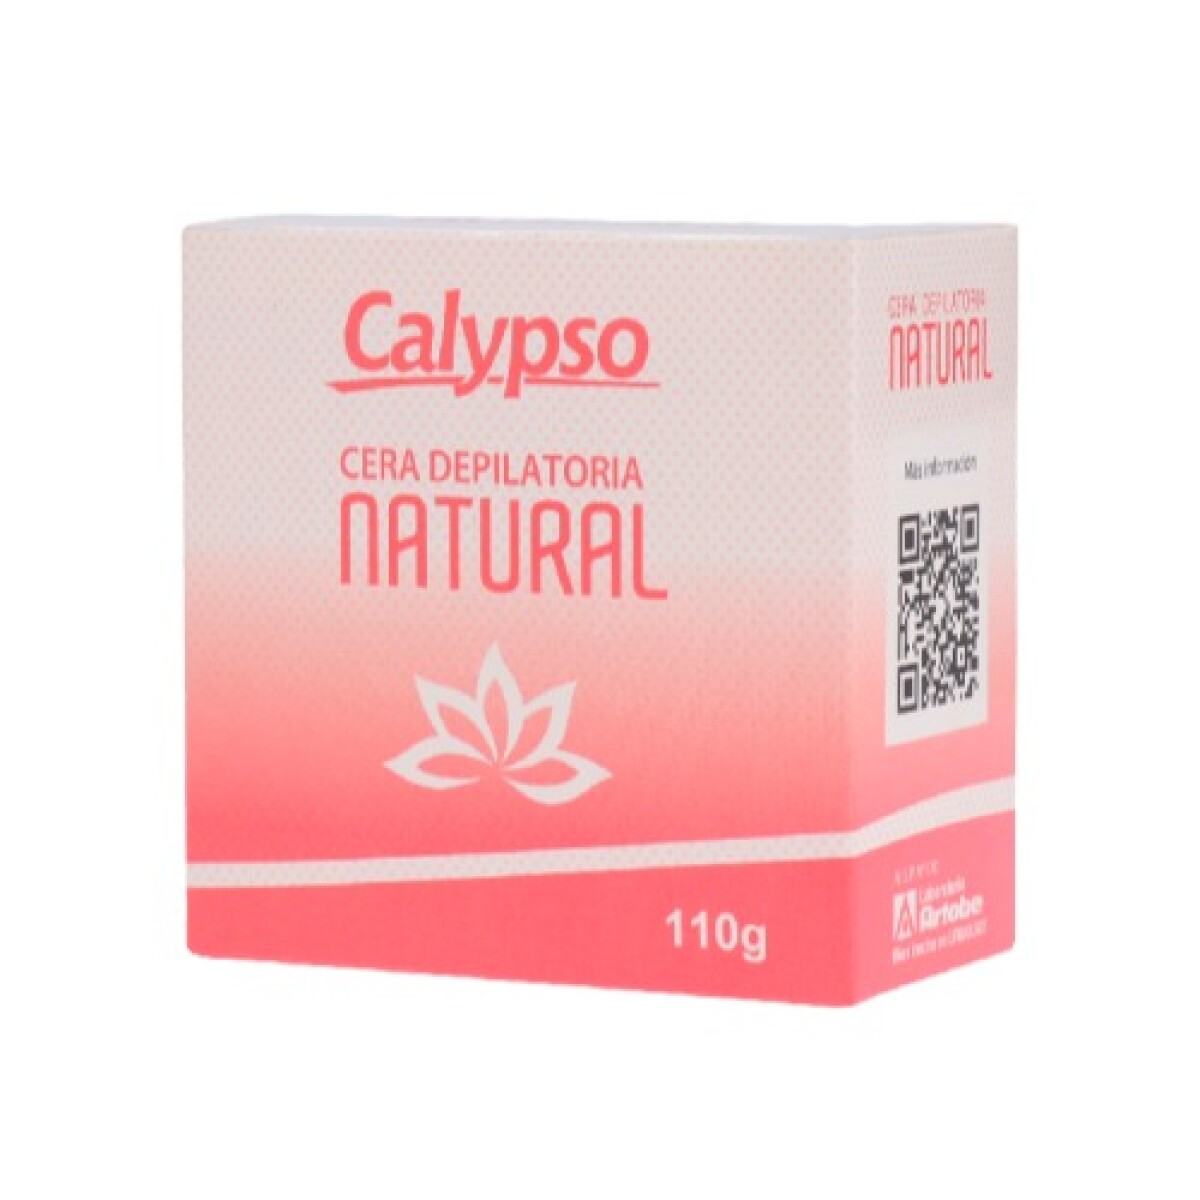 Cera Depilatoria Calypso - Natural 110 GR 